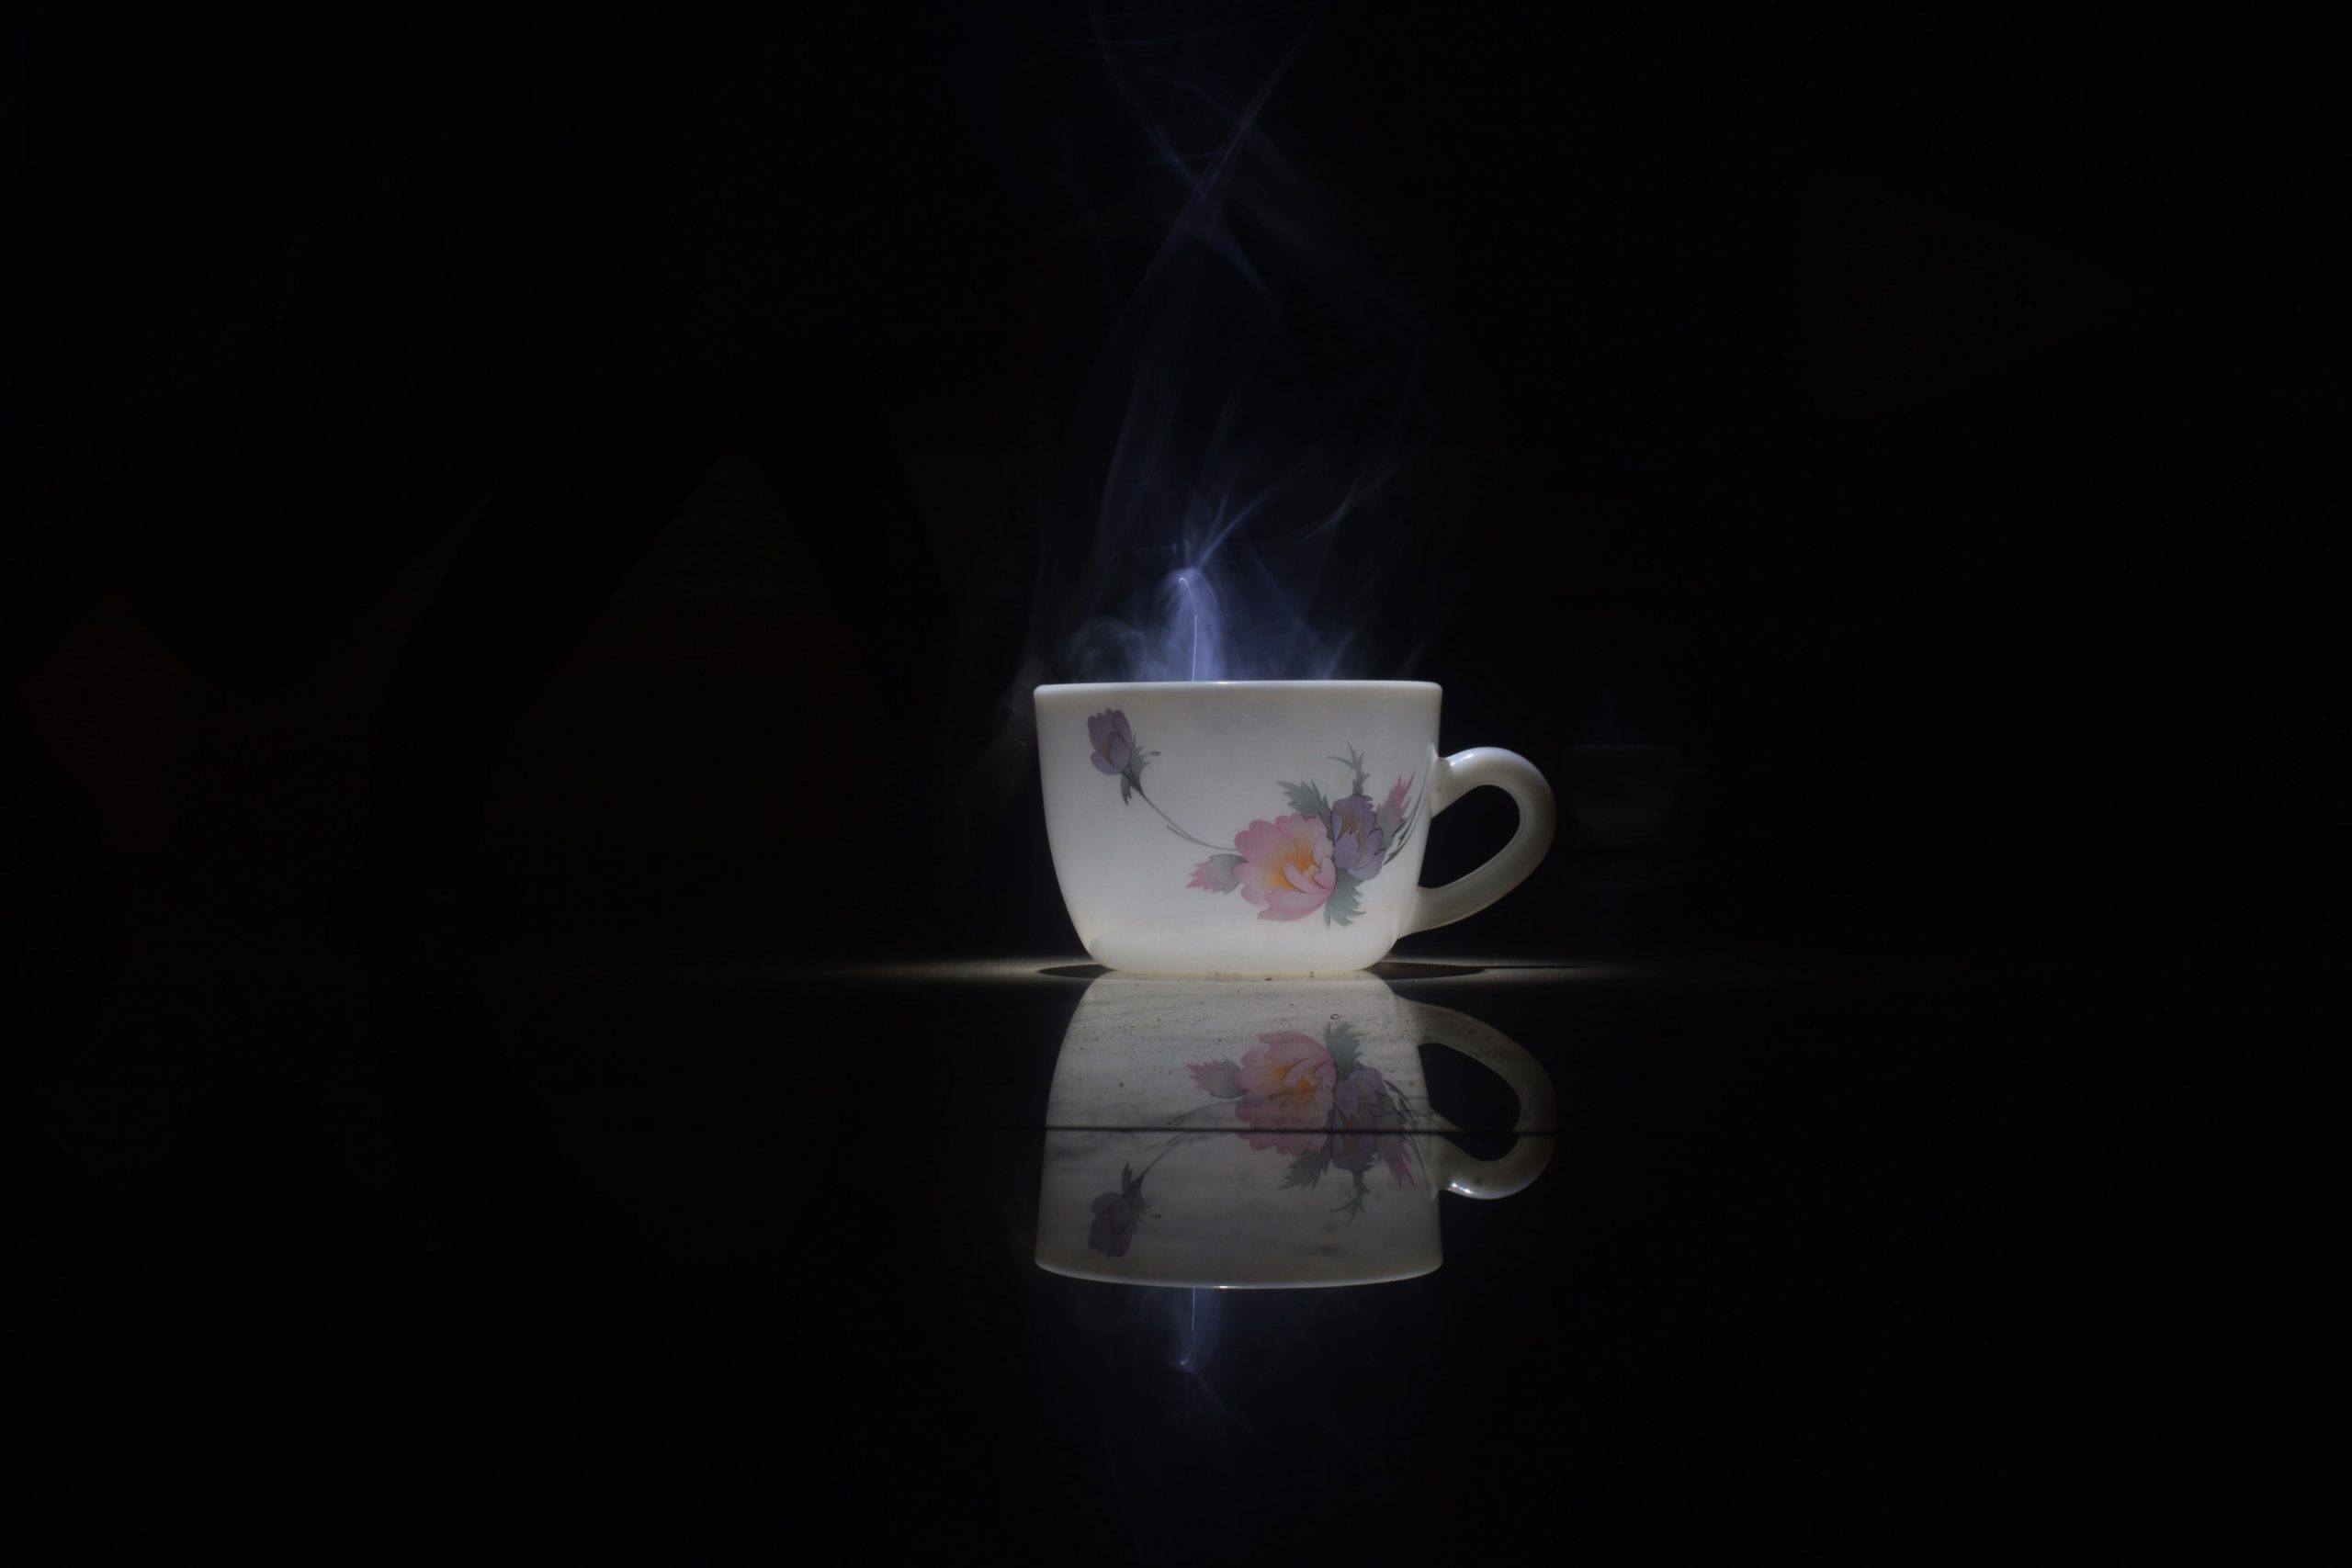 A hot tea cup